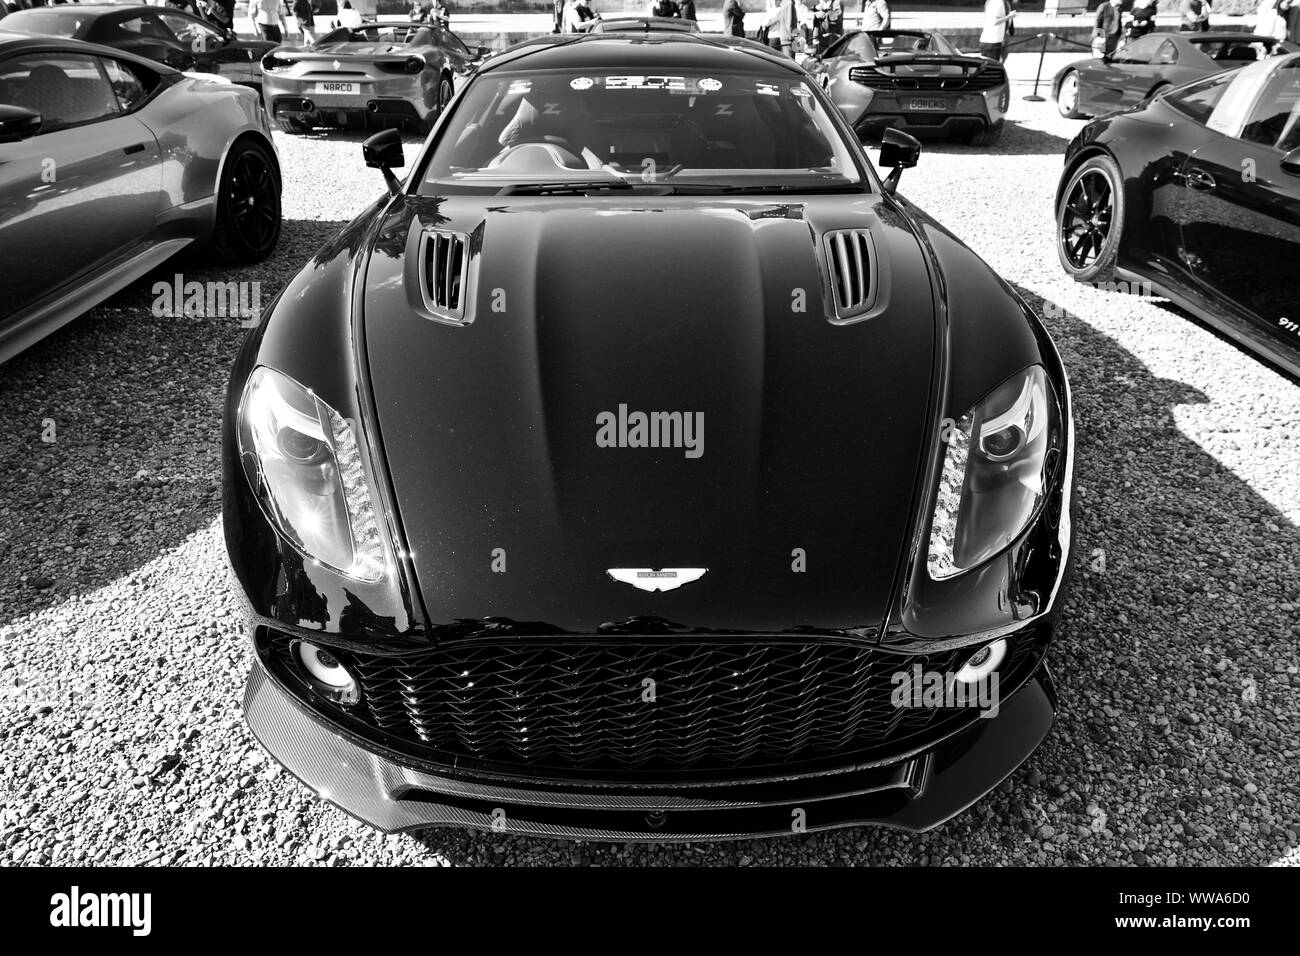 Aston Martin DBS Superleggera sur spectacle au Concours d'elégance à Blenheim Palace, le 8 septembre 2019 Banque D'Images